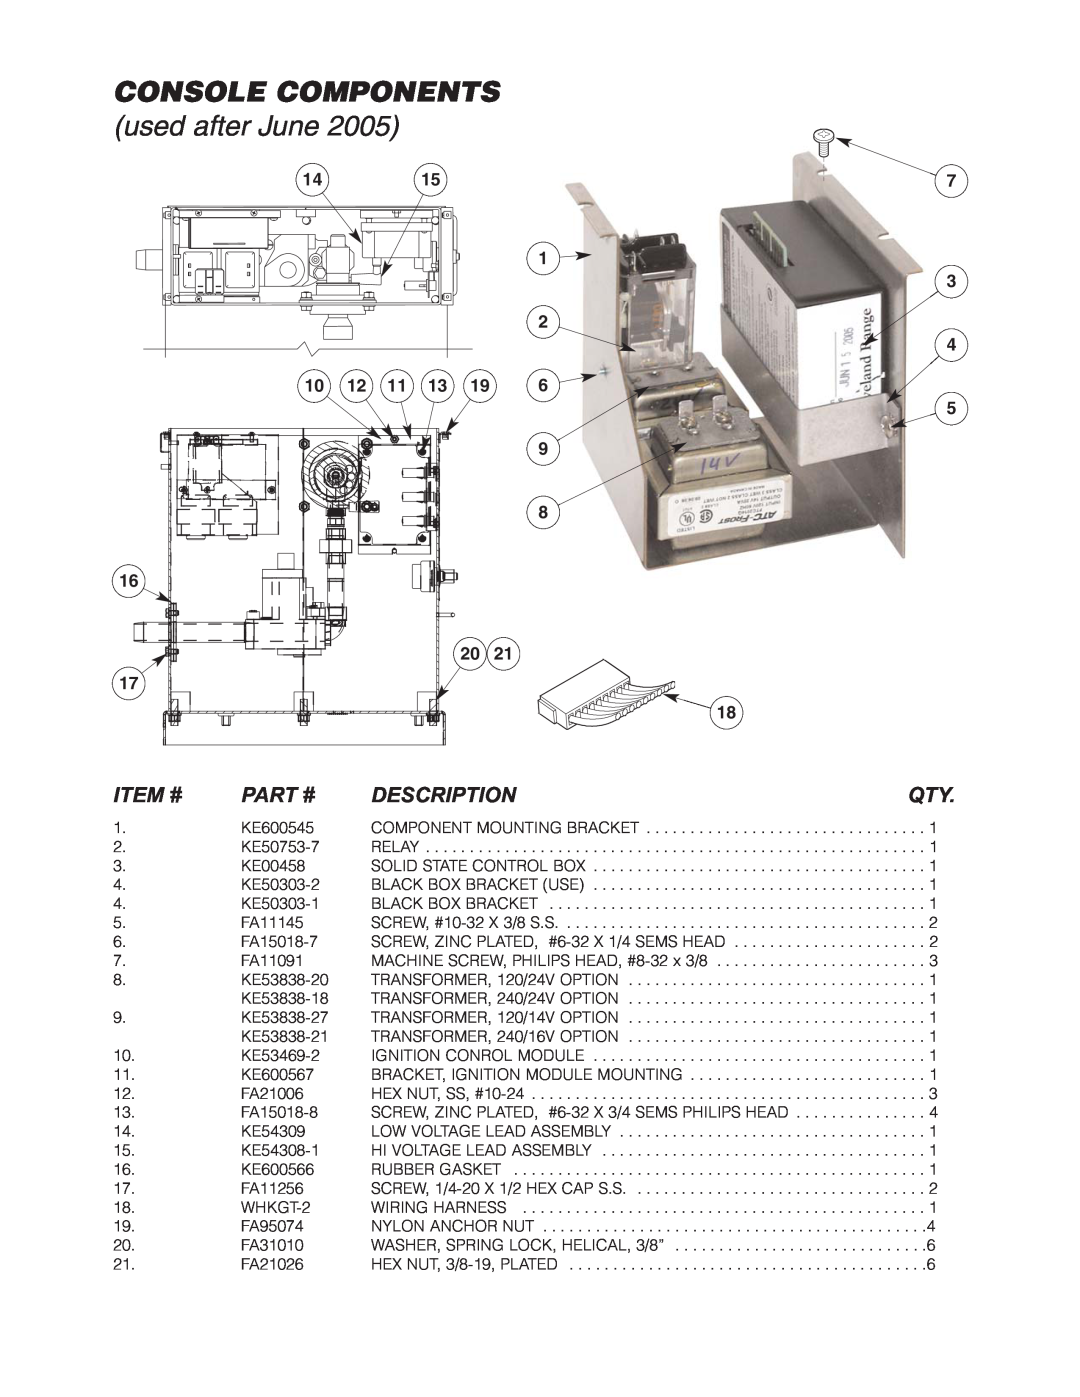 Cleveland Range KGT-12-T, KGT-6-T manual Console Components, used after June, Item #, Part #, Description 